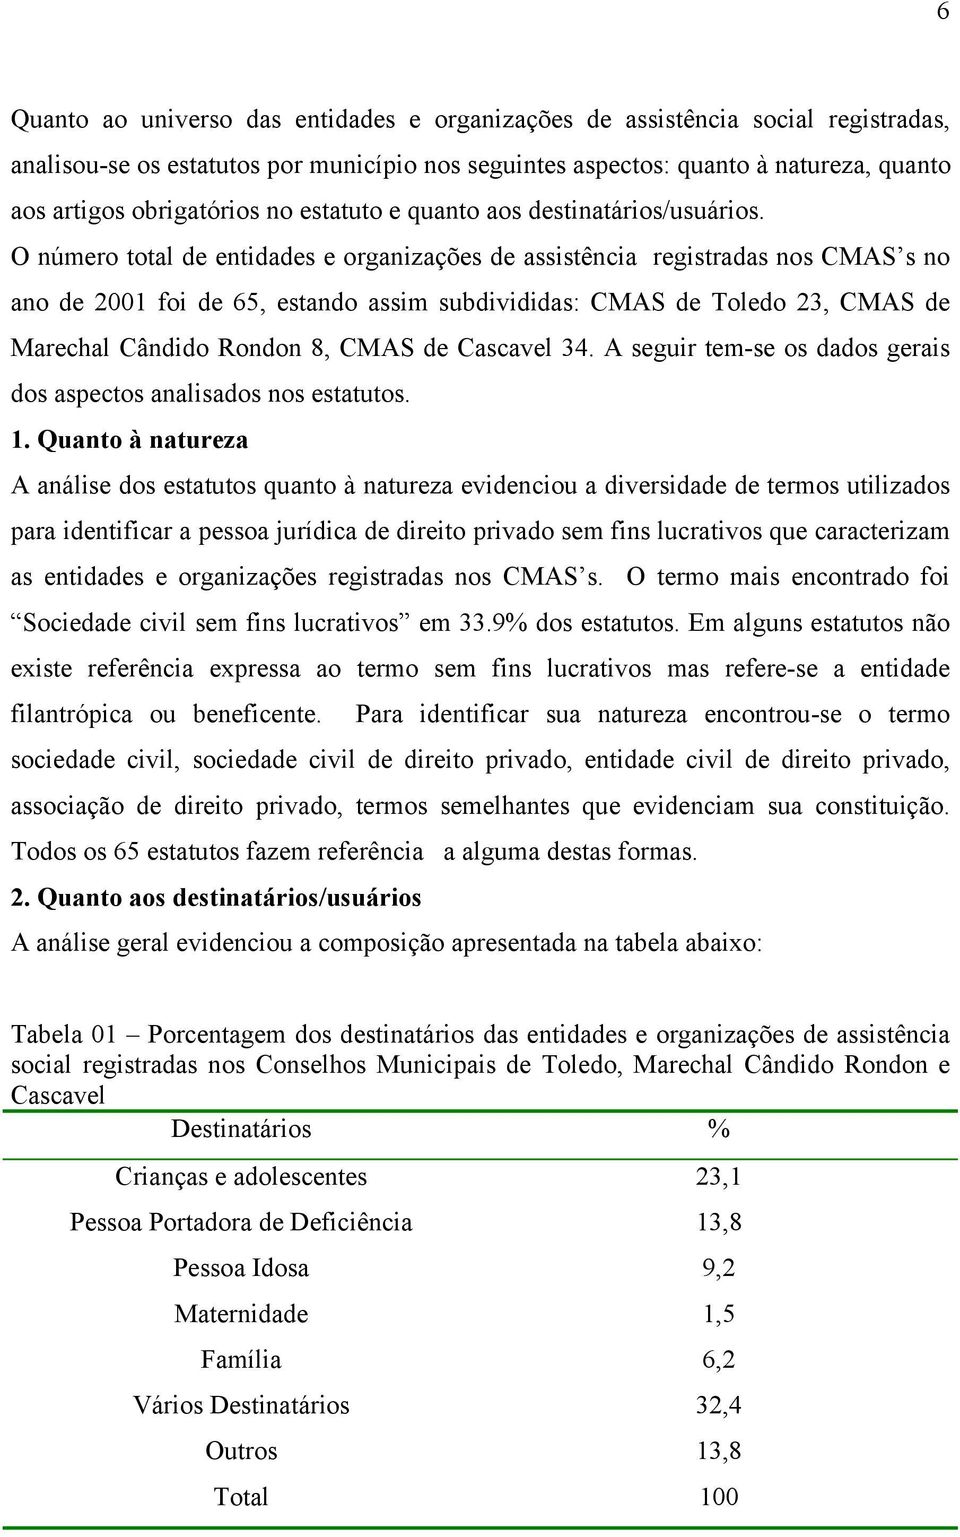 O número total de entidades e organizações de assistência registradas nos CMAS s no ano de 2001 foi de 65, estando assim subdivididas: CMAS de Toledo 23, CMAS de Marechal Cândido Rondon 8, CMAS de